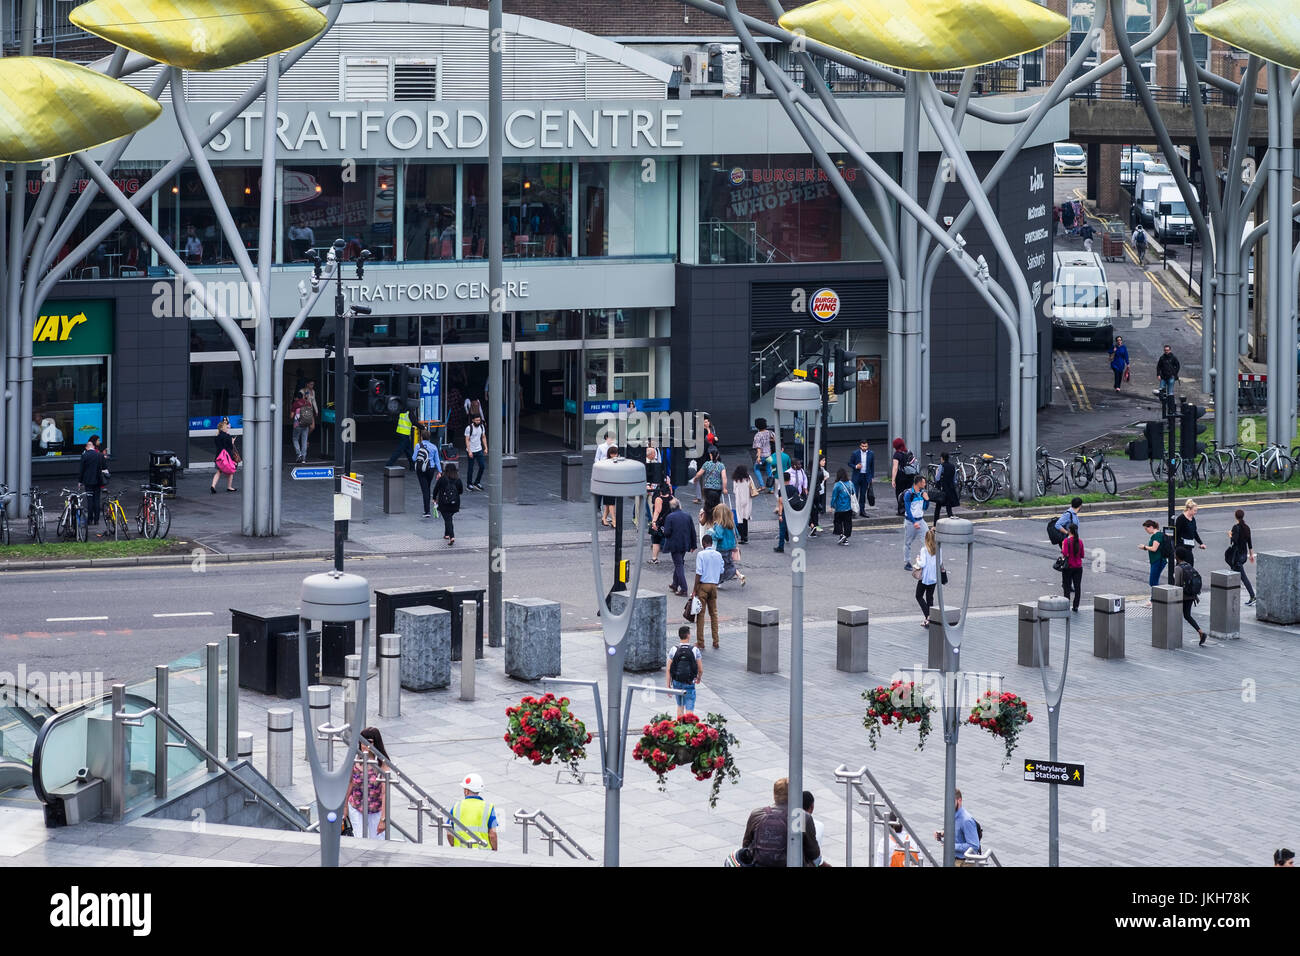 Les personnes qui traversent la route à l'extérieur du centre de Stratford, l'Arrondissement de Newham, Londres, Angleterre, Royaume-Uni Banque D'Images